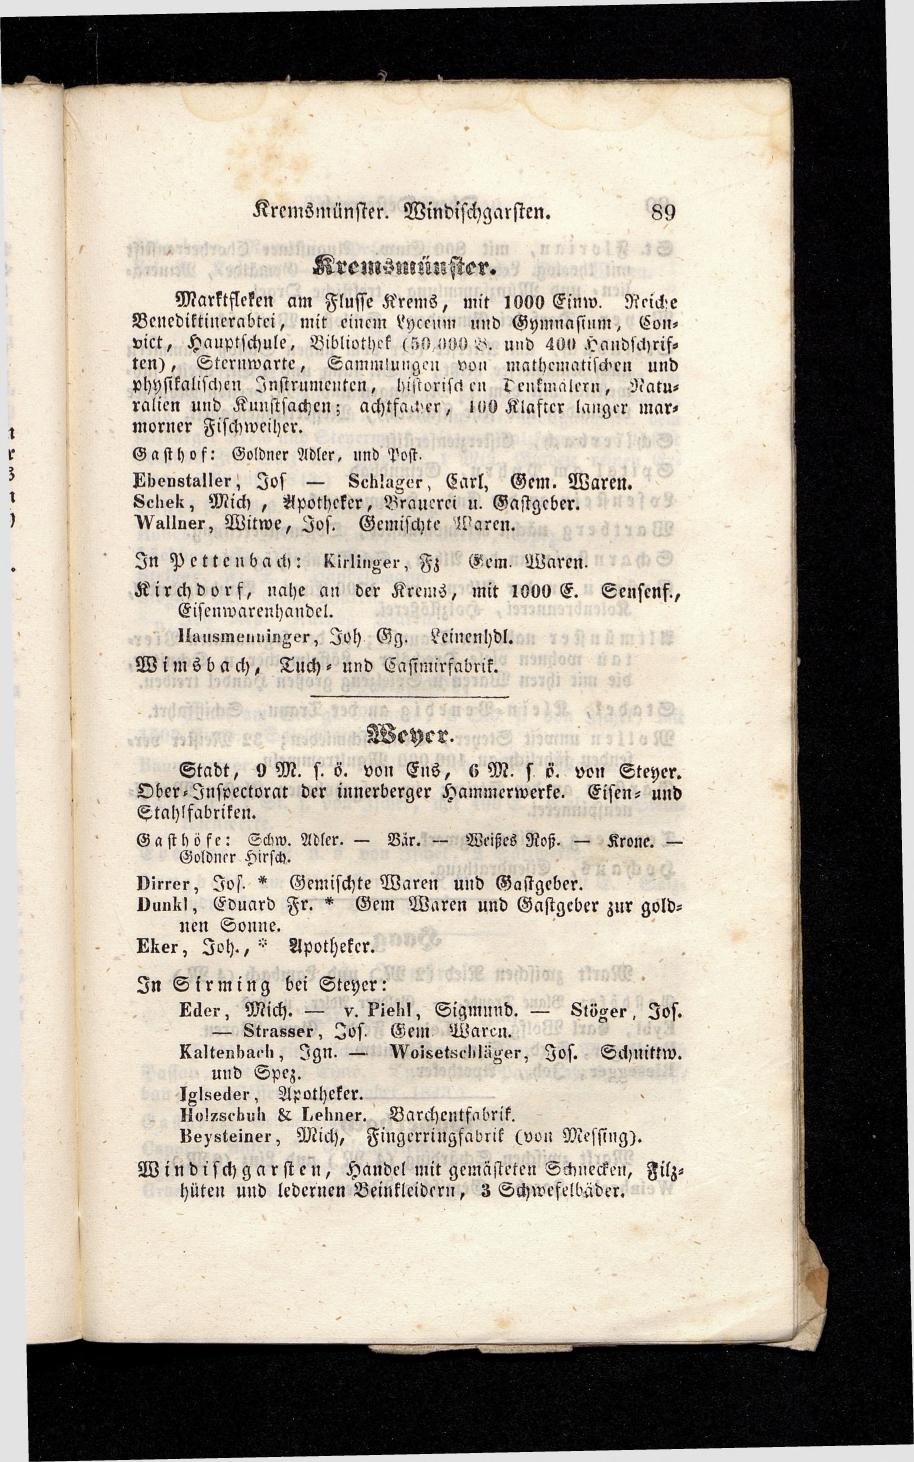 Grosses Adressbuch der Kaufleute. No. 13. Oesterreich ober u. unter der Enns 1844 - Seite 93